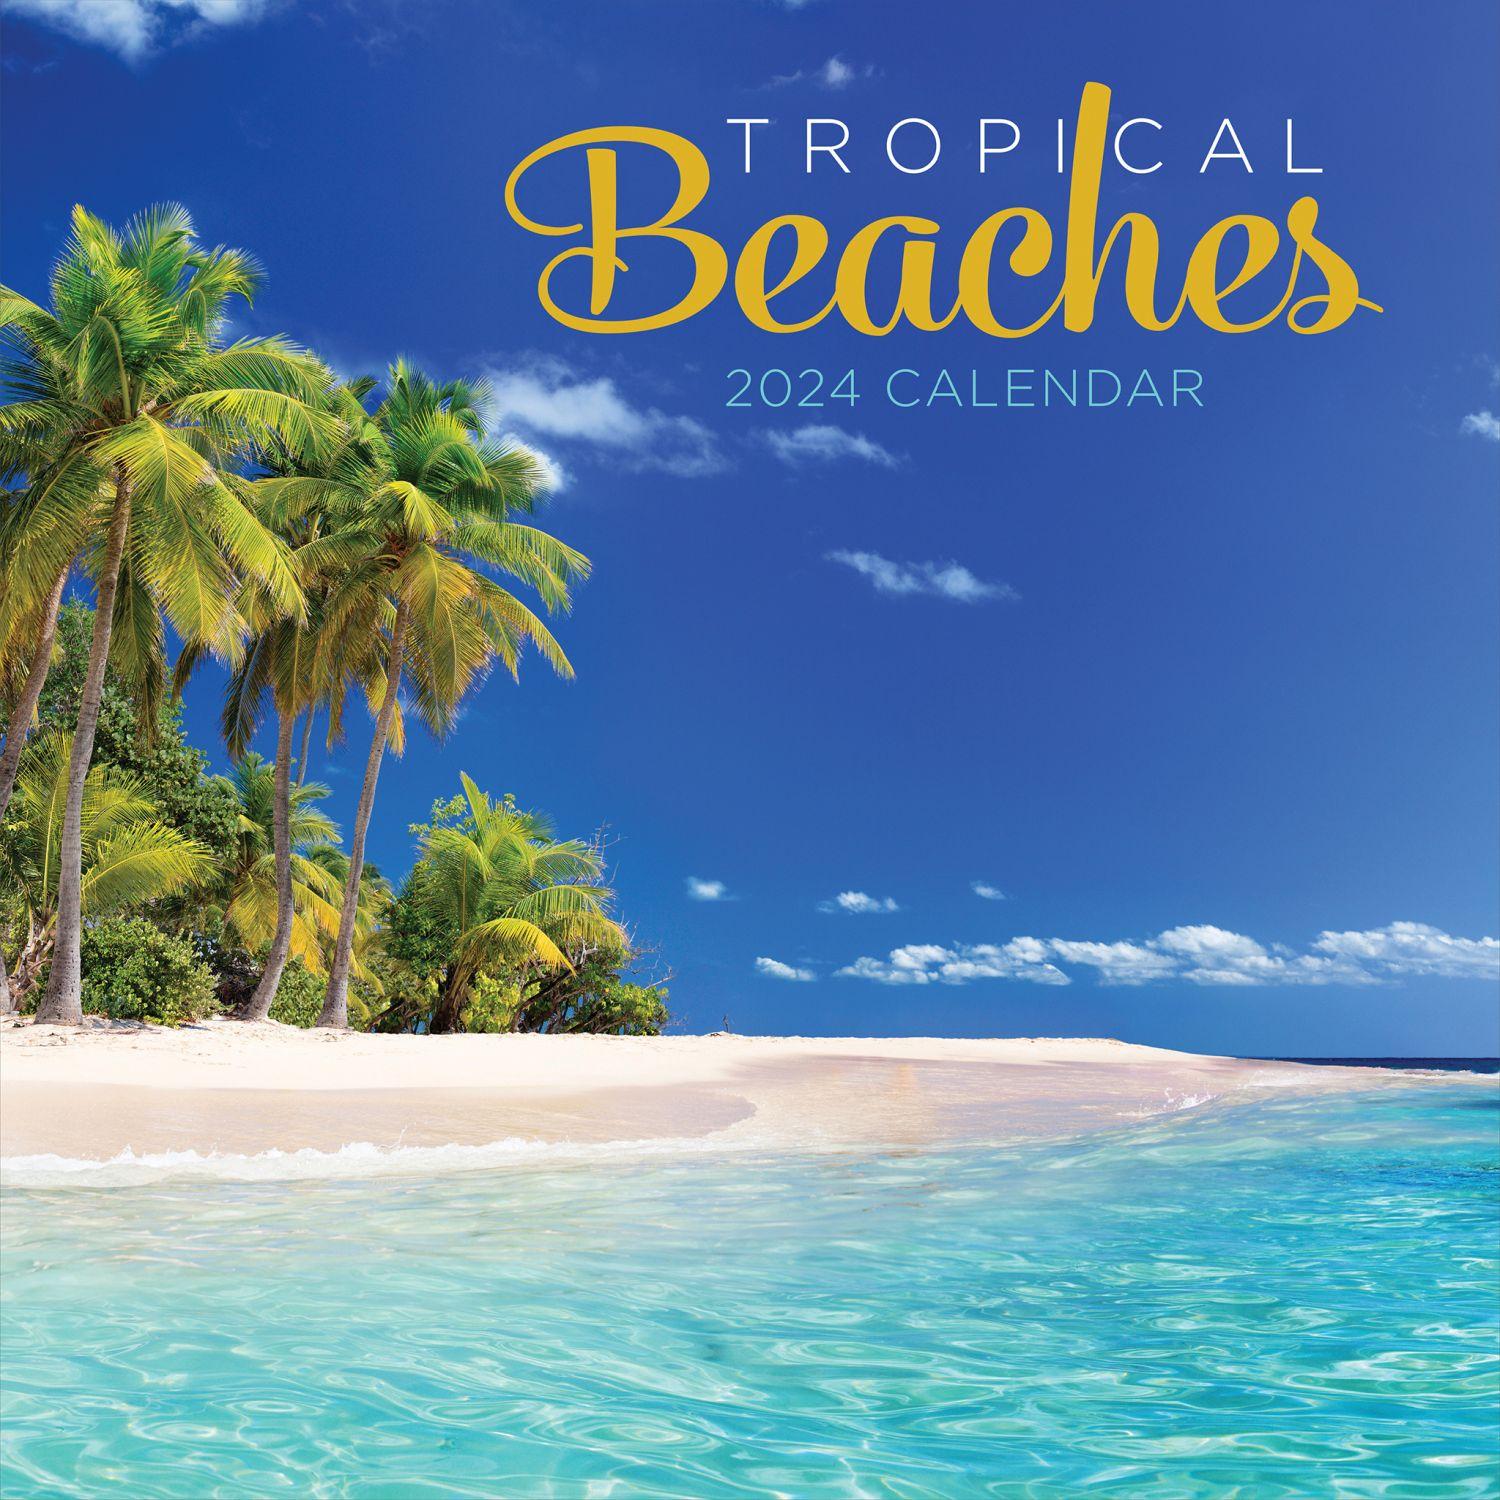 Tropical Beaches 2024 Wall Calendar - Calendars.com